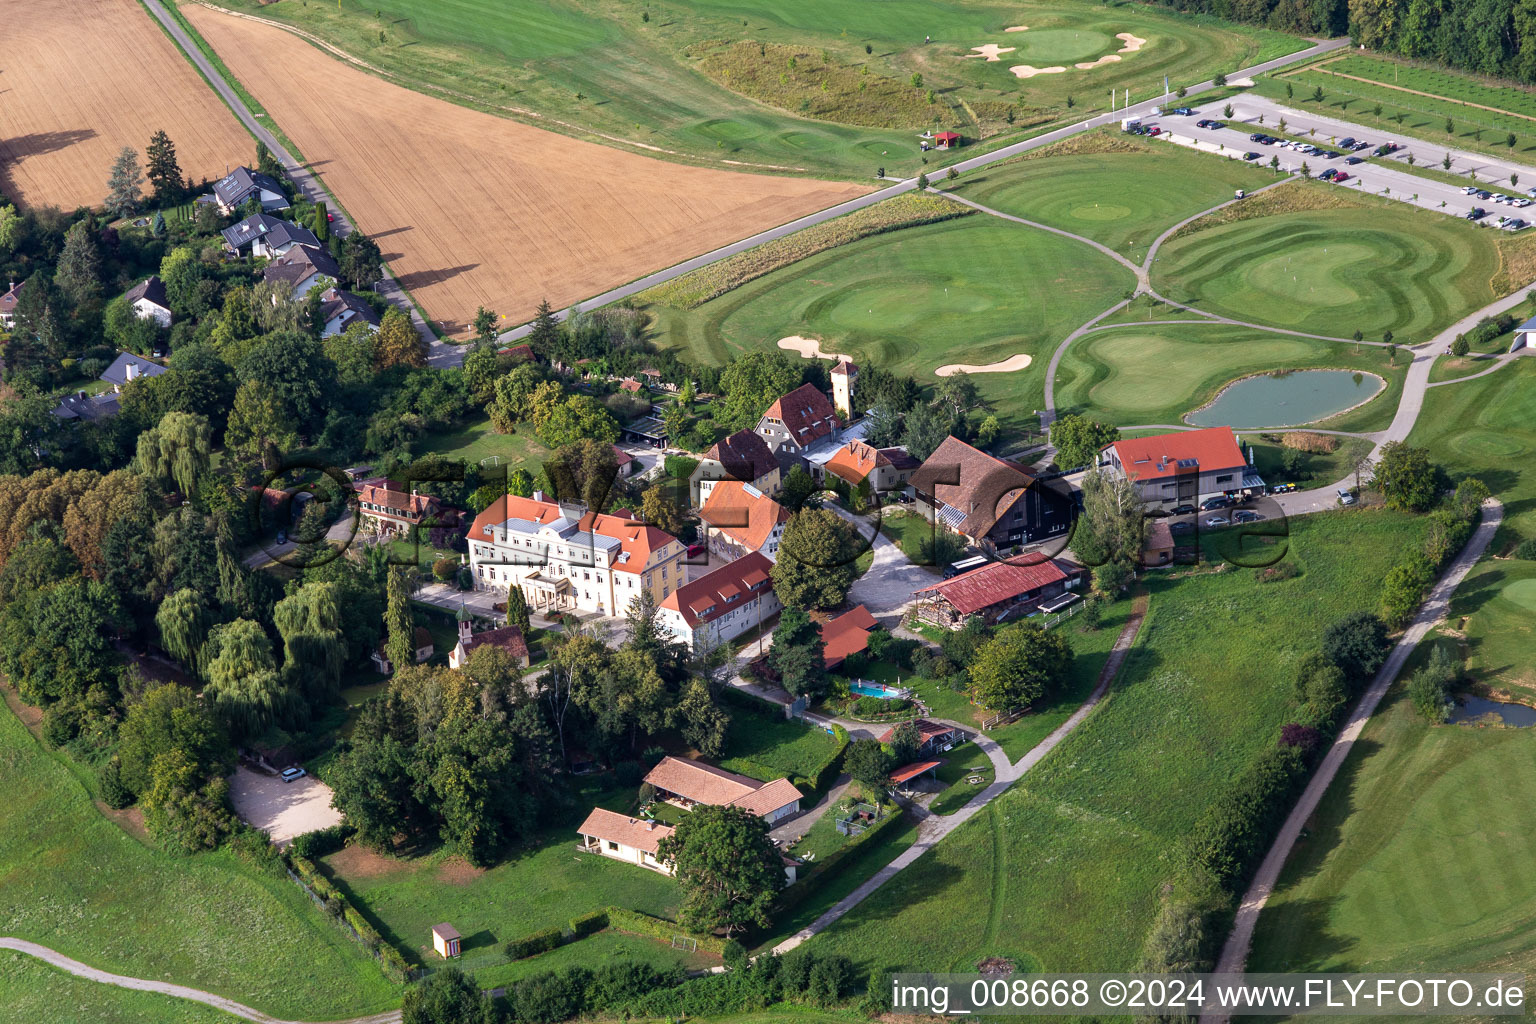 Luftbild von Gelände des Golfplatz Golfclub Schloss Kressbach in Kressbach im Bundesland Baden-Württemberg, Deutschland